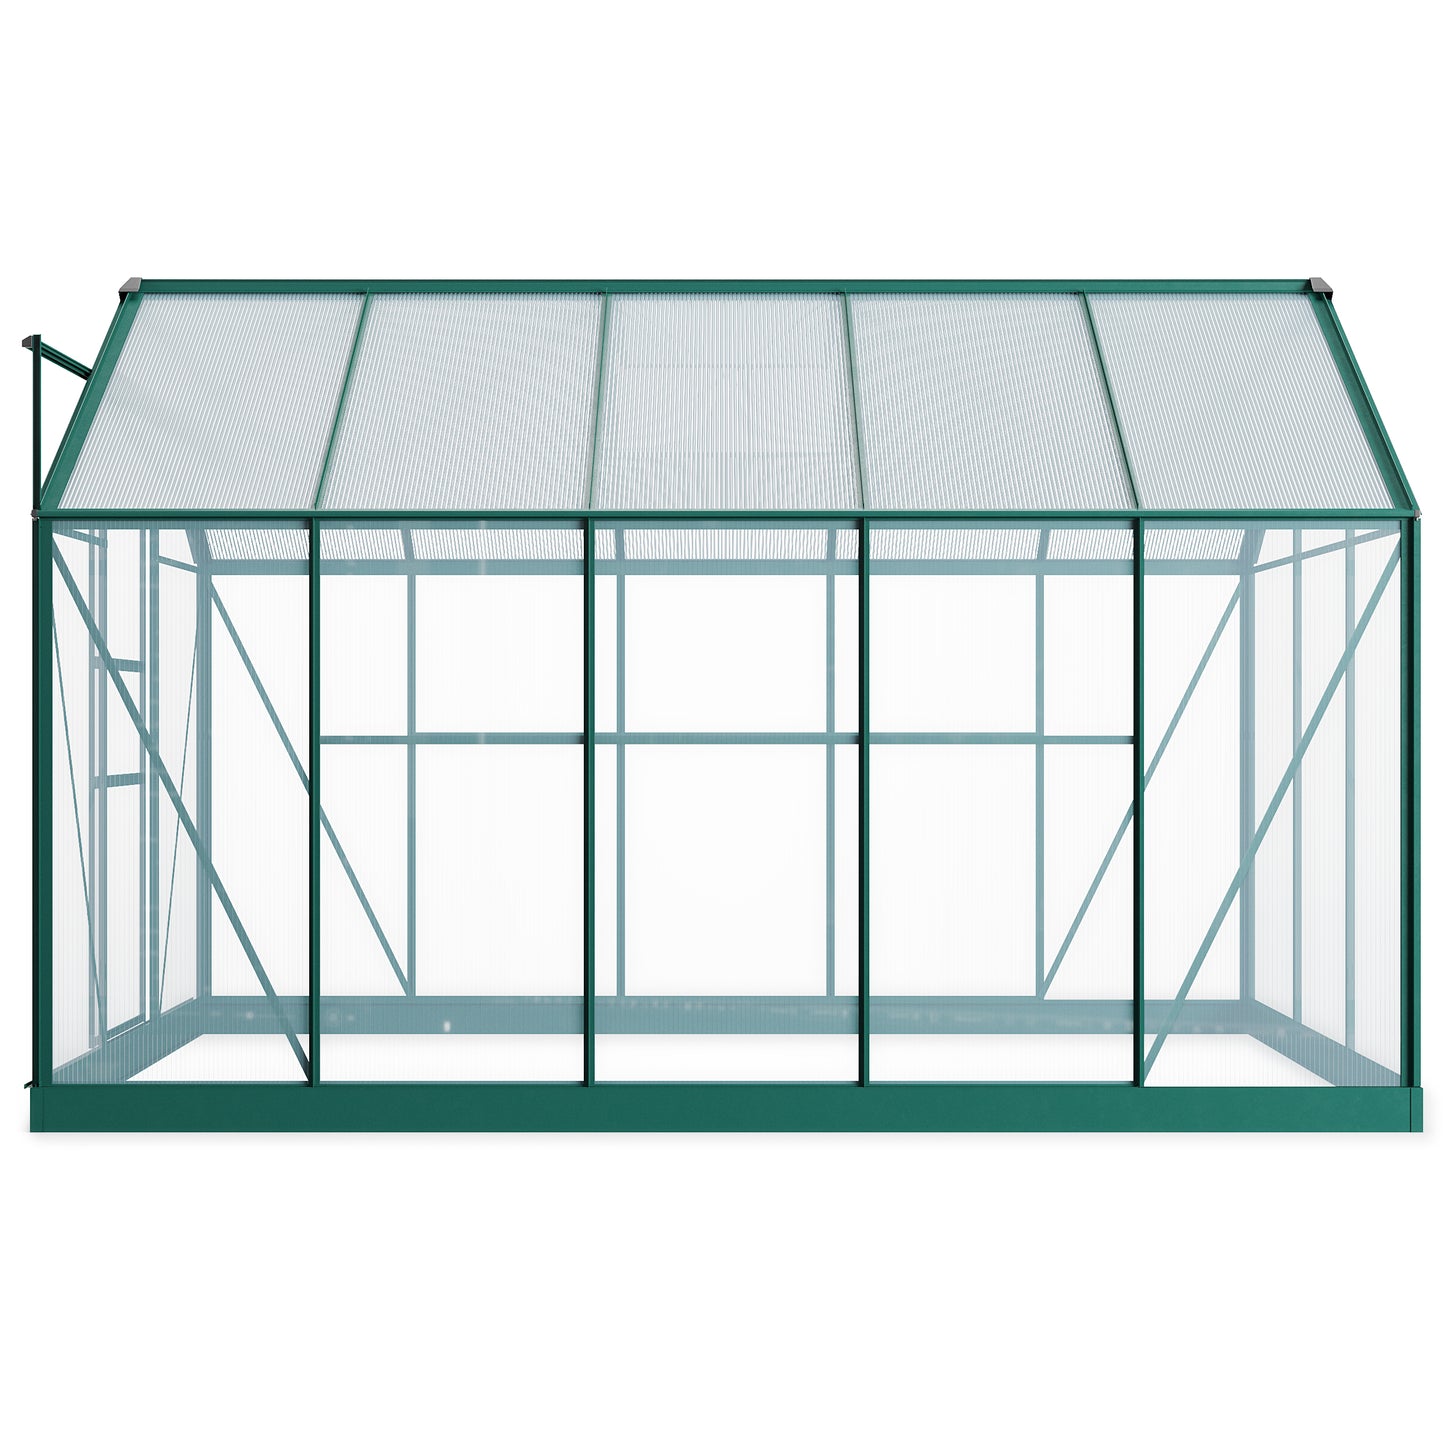 Rosette Hobby 6 x 10 Aluminium Polycarbonate Greenhouse - Premium Garden